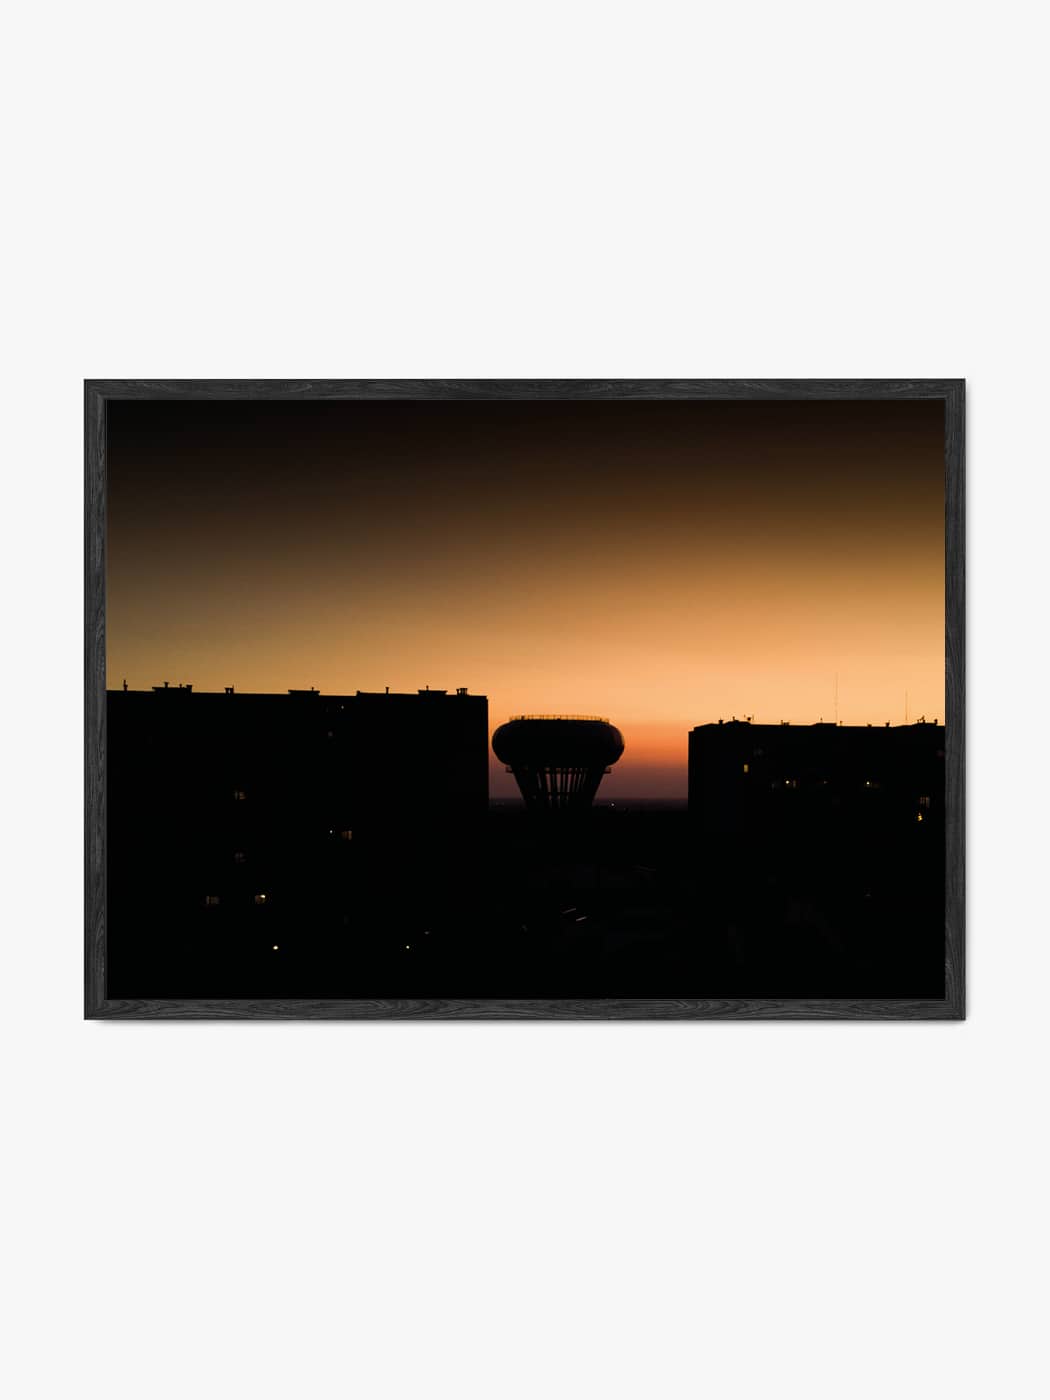 Obraz akustyczny ze zdjęcia - Tarnowska Bania wieża ciśnień o zachodzie słońca - Paweł Topolski